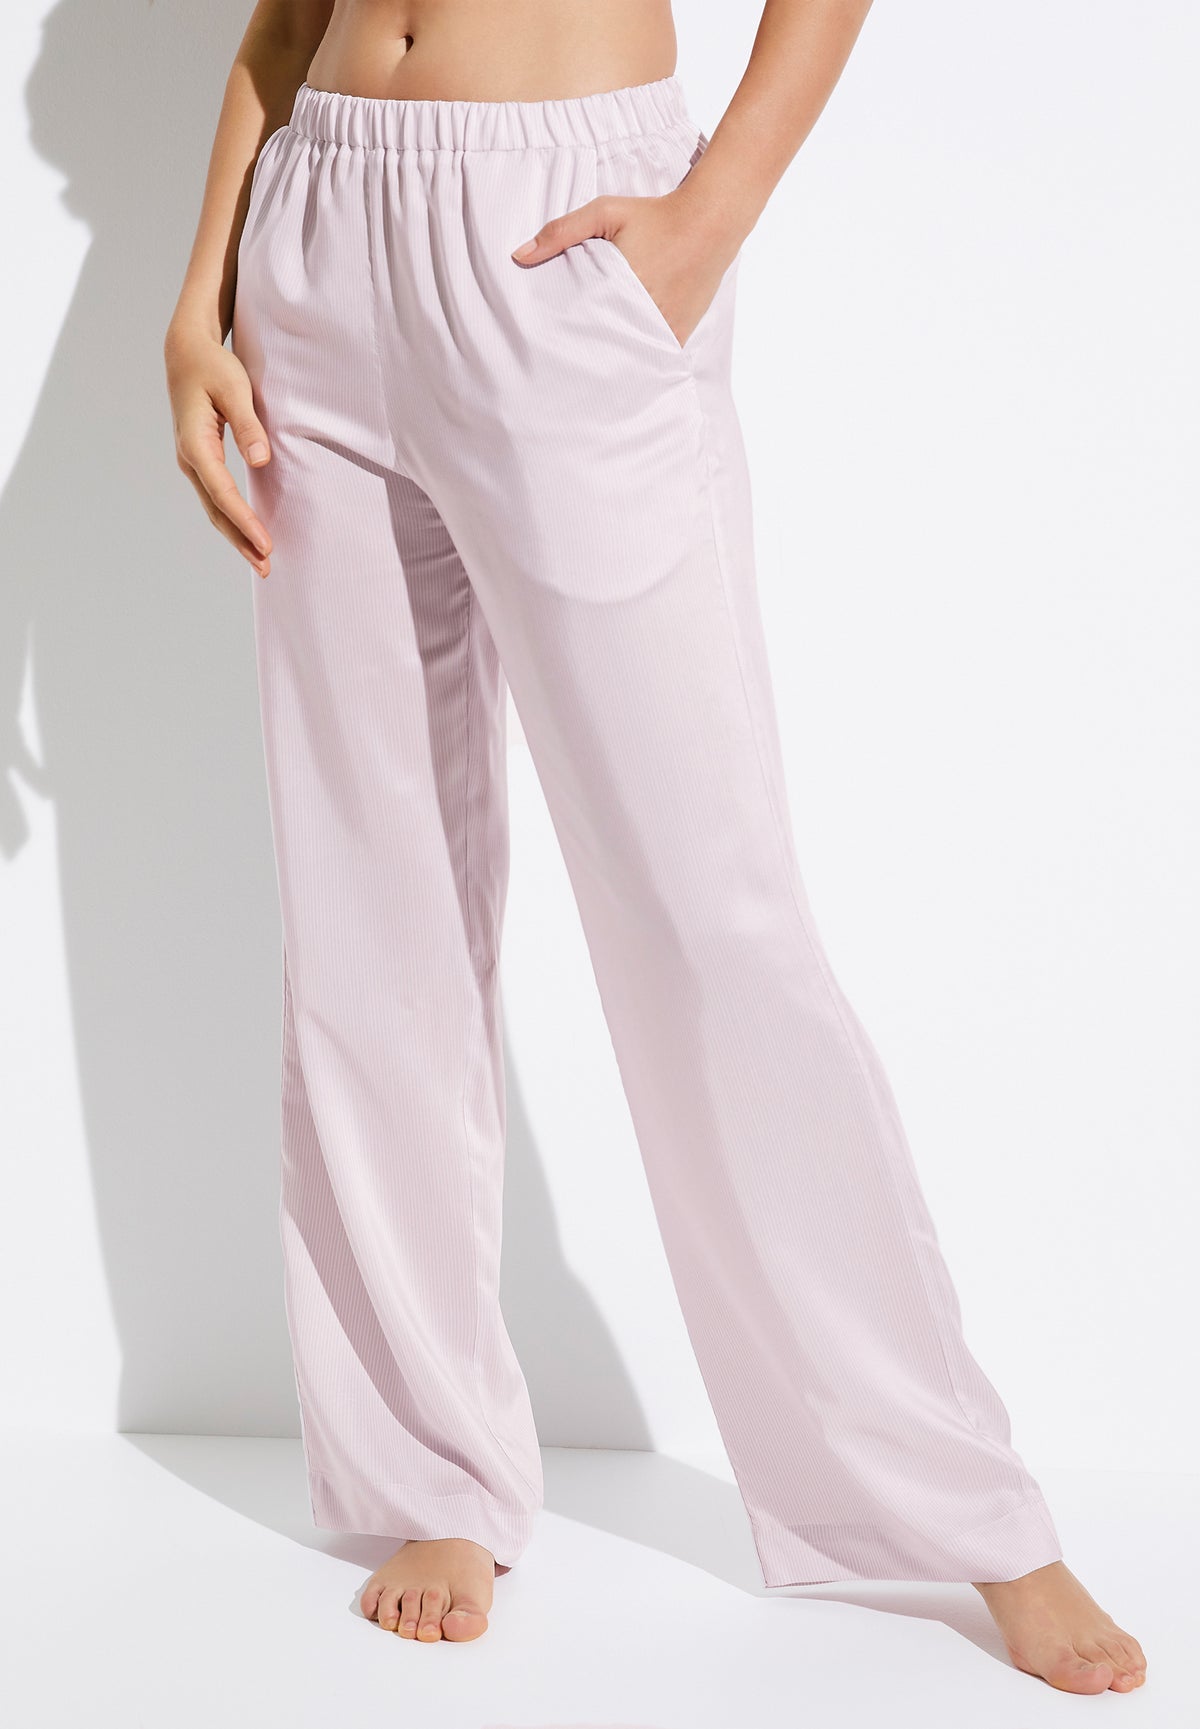 Feminine Stripes | Pantalon - lilac stripes